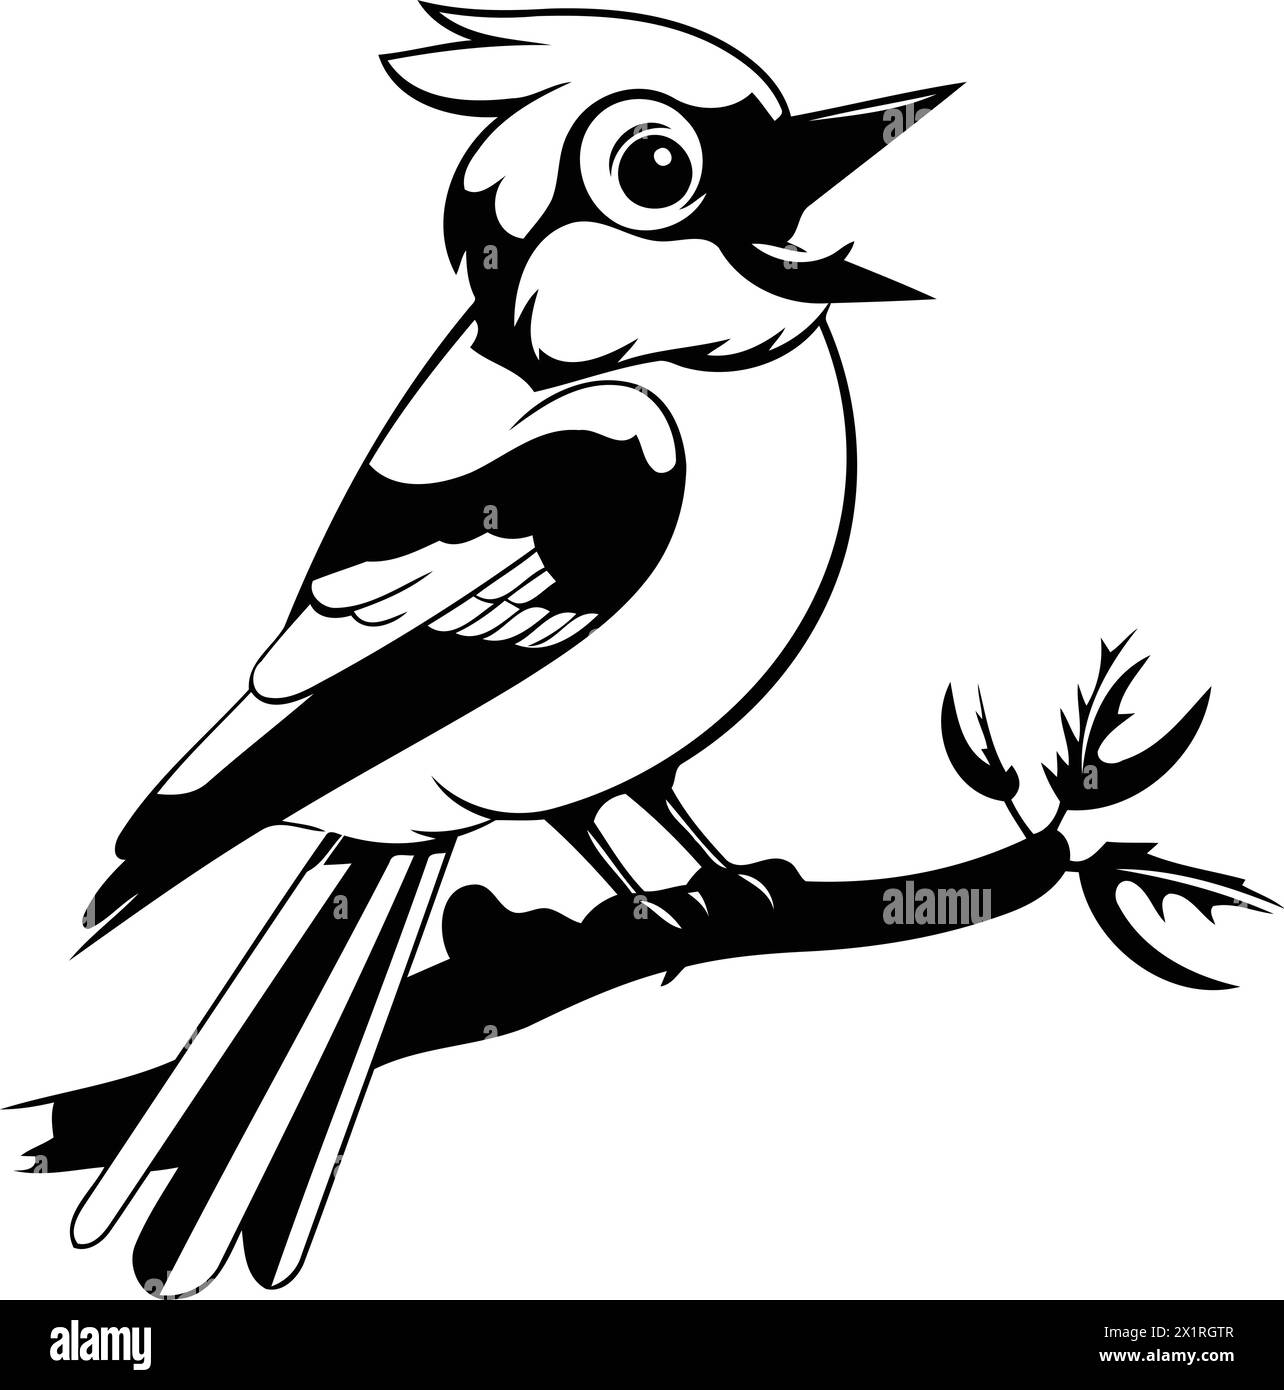 Cartoon blue jay bird sitting on a branch. Vector illustration. Stock Vector